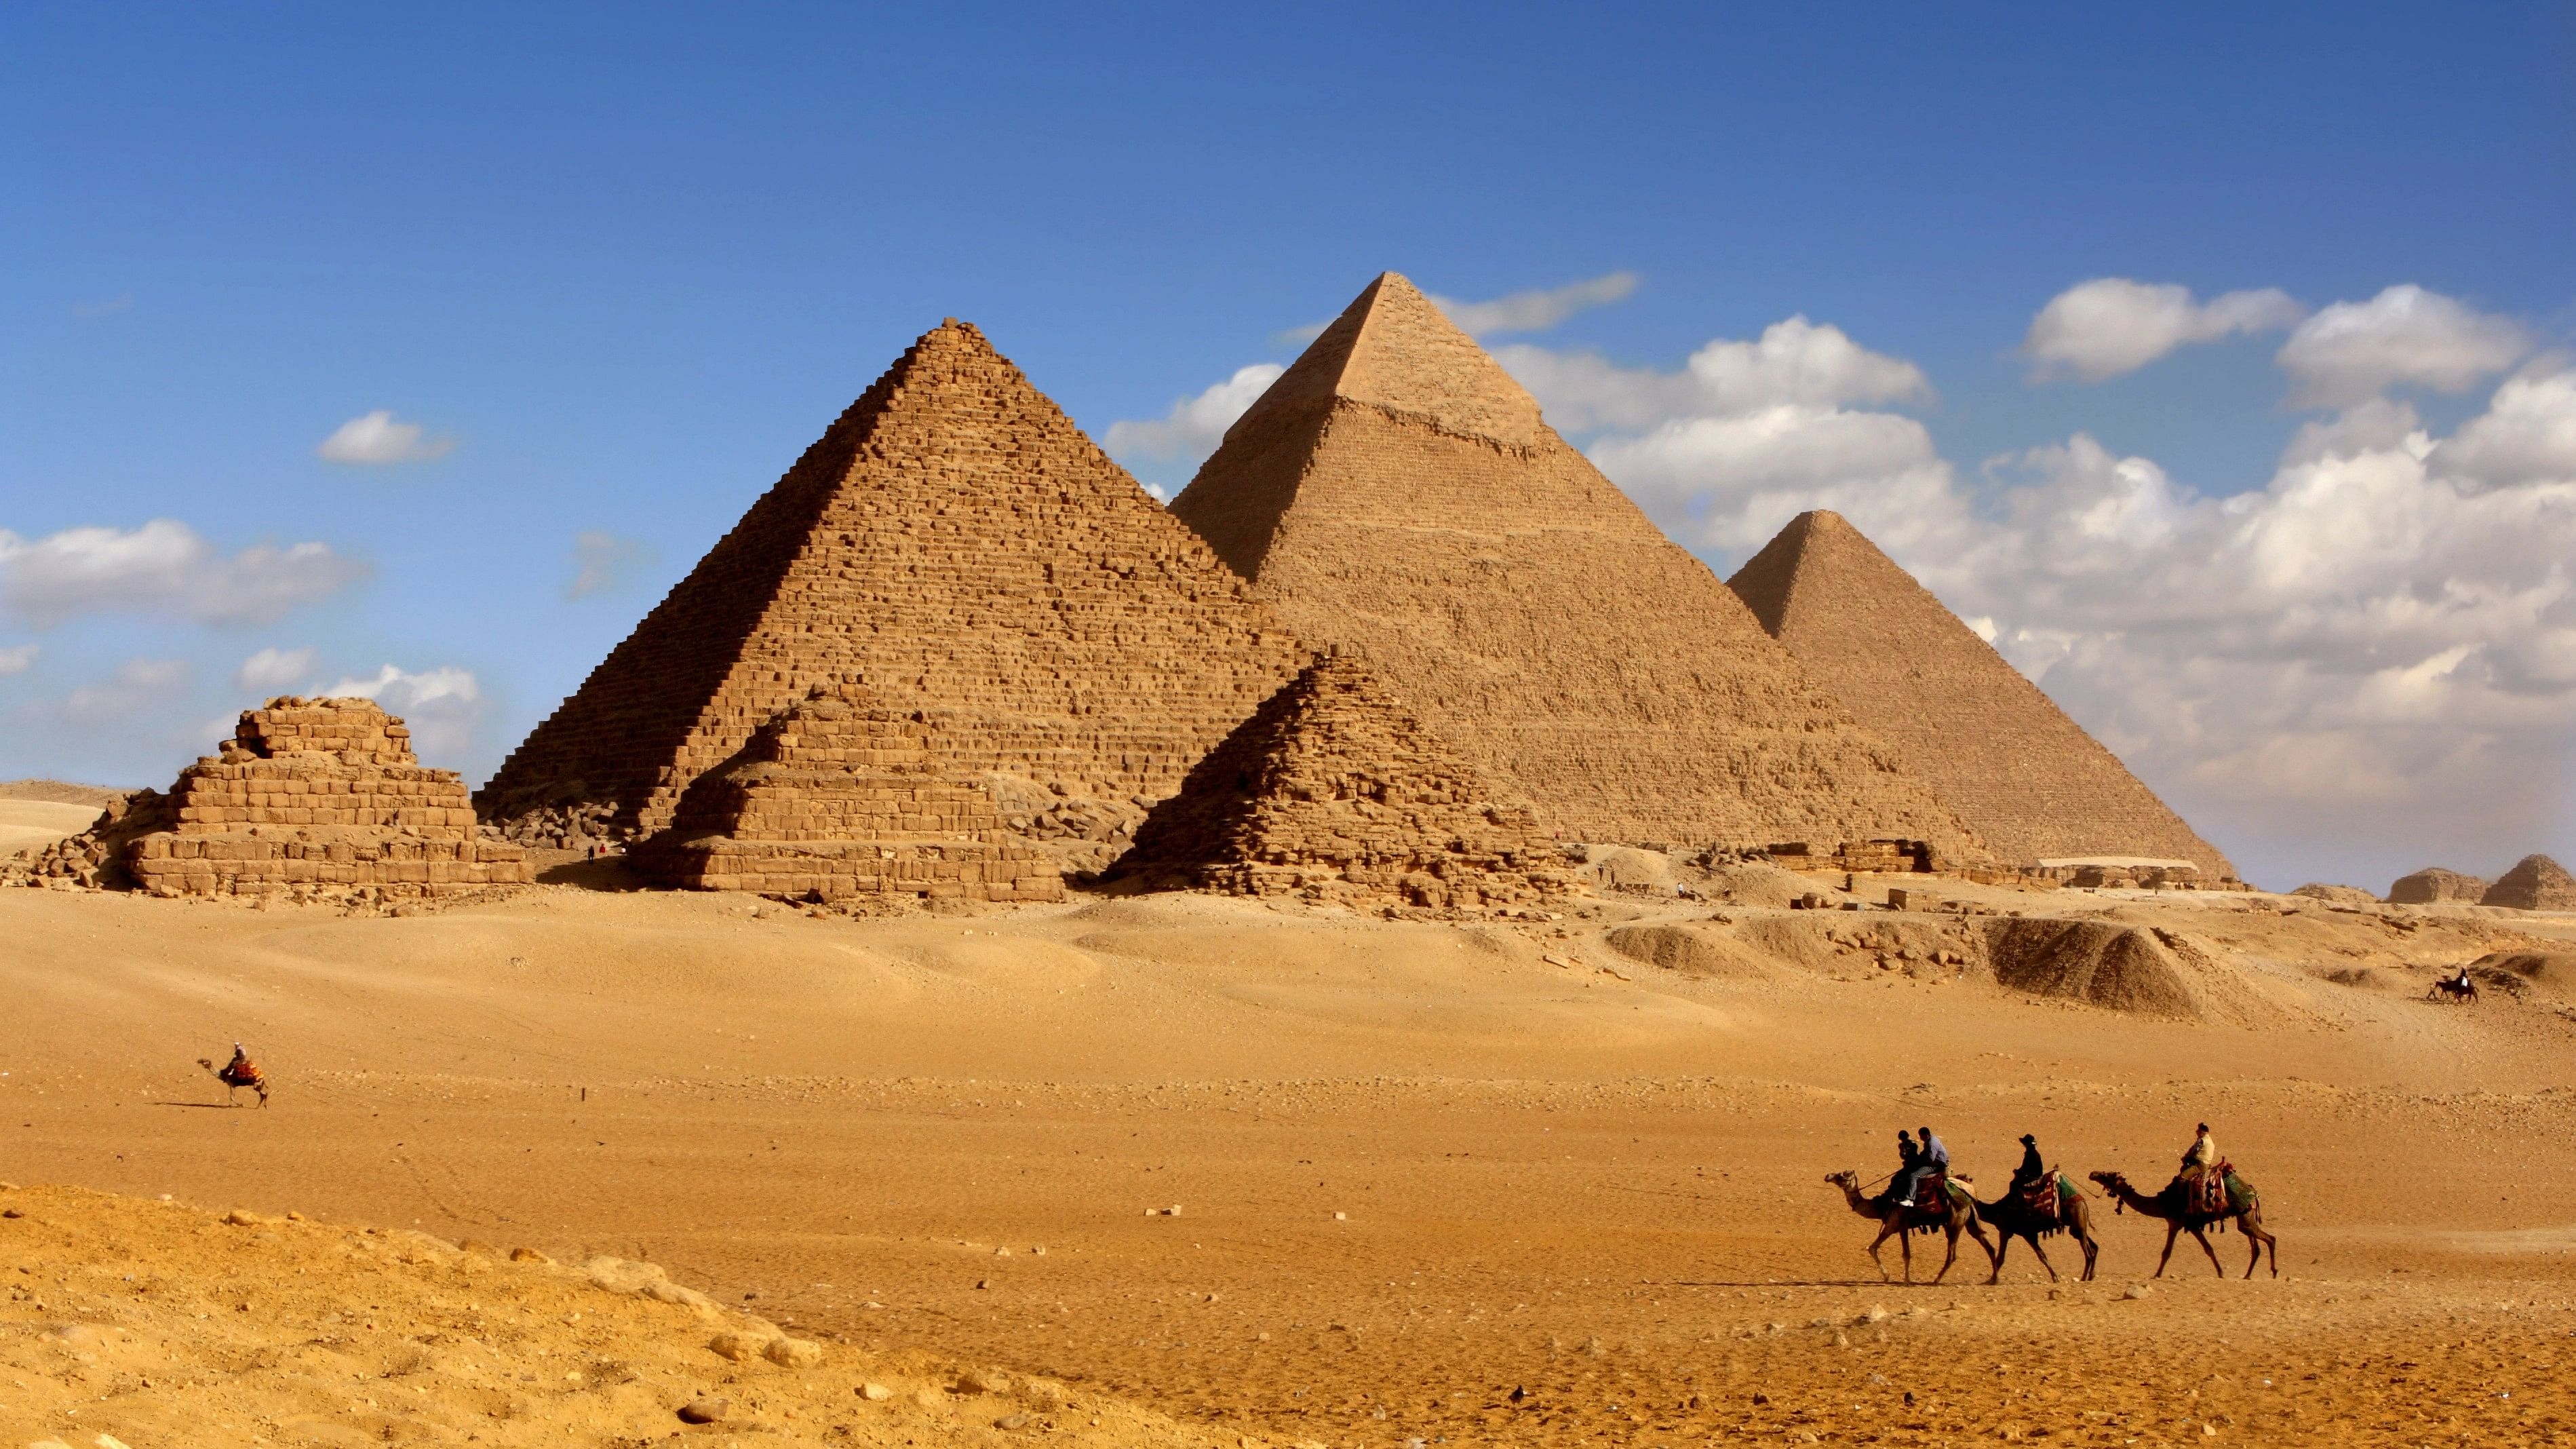 <div class="paragraphs"><p>A view of the pyramids of Egypt.</p></div>